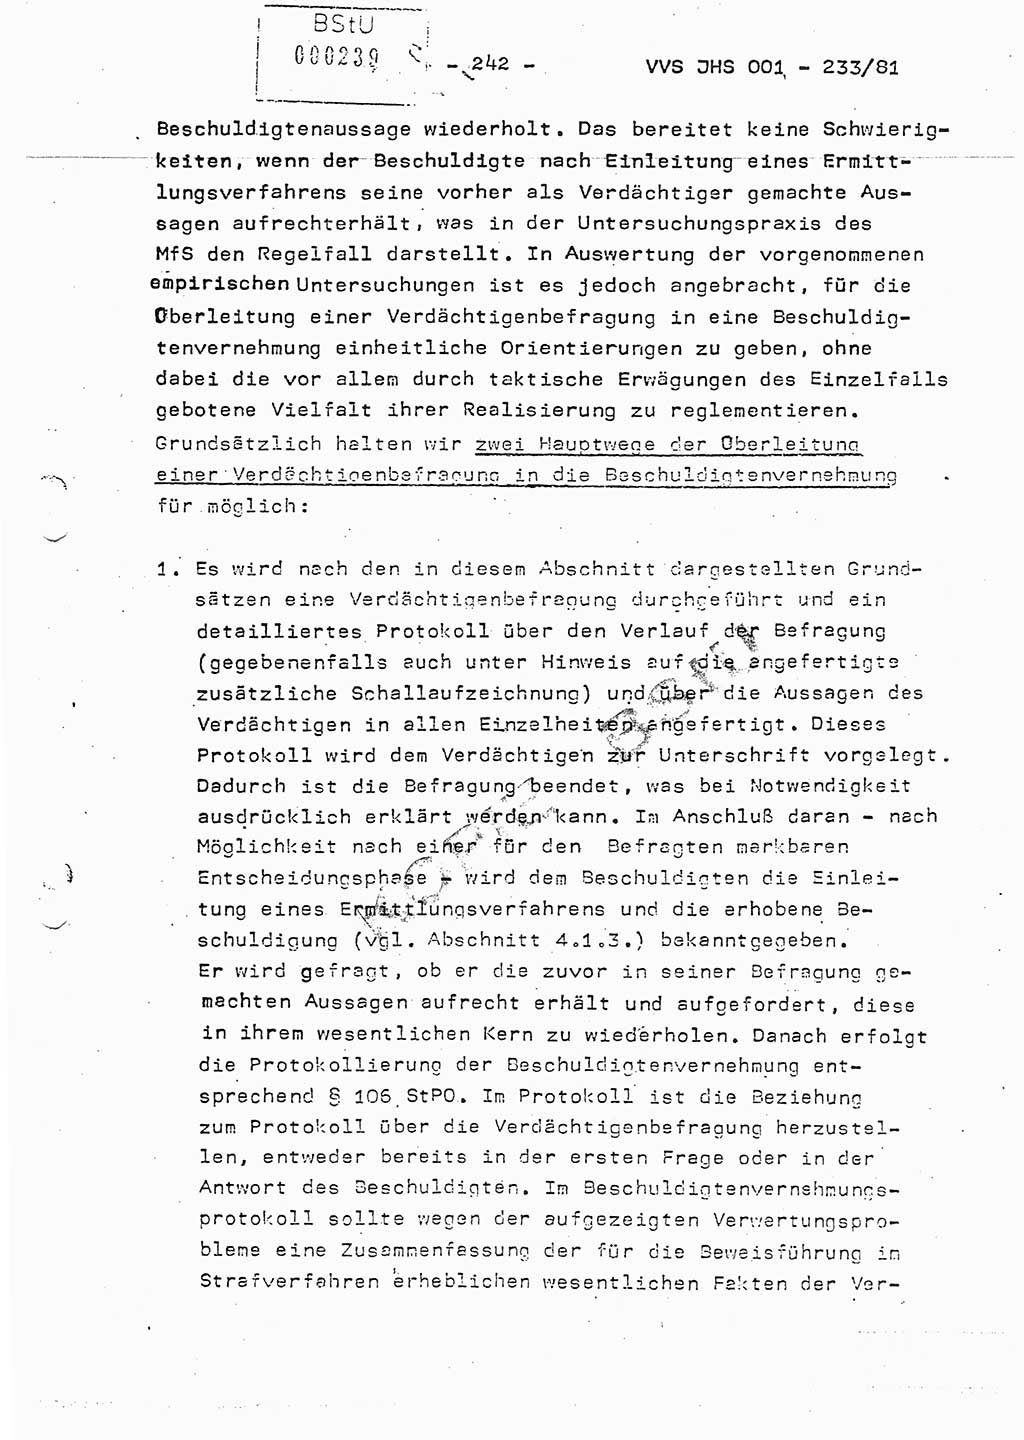 Dissertation Oberstleutnant Horst Zank (JHS), Oberstleutnant Dr. Karl-Heinz Knoblauch (JHS), Oberstleutnant Gustav-Adolf Kowalewski (HA Ⅸ), Oberstleutnant Wolfgang Plötner (HA Ⅸ), Ministerium für Staatssicherheit (MfS) [Deutsche Demokratische Republik (DDR)], Juristische Hochschule (JHS), Vertrauliche Verschlußsache (VVS) o001-233/81, Potsdam 1981, Blatt 242 (Diss. MfS DDR JHS VVS o001-233/81 1981, Bl. 242)